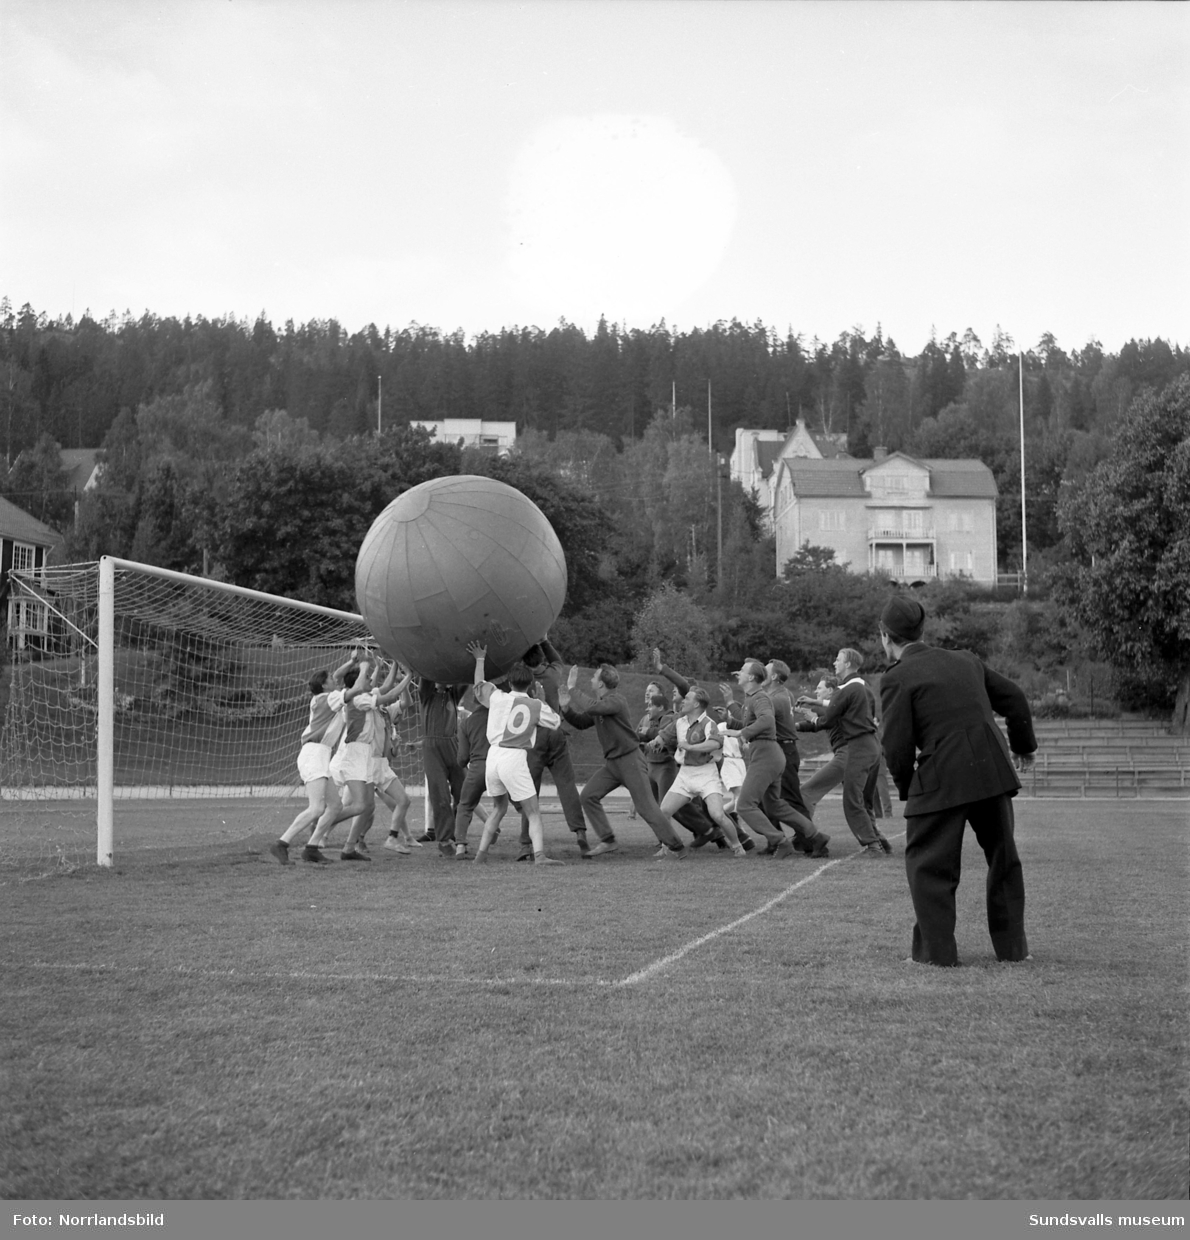 Det var festligt värre i Idrottsparken hösten 1952 då 900 besökare introducerades för det i Sundsvall nya sportfenomenet pushboll. En gigantisk boll med en diameter på 183 centimeter hade så att säga huvudrollen och i premiärmatchen möttes Brandkåren och GIF Sundsvall. Slutresultatet 8-0 för Brandkåren vittnar väl om att traditionell fotbollsteknik inte var framgångsrika kunskaper i denna variant av bollsport. I lokalpressens referat framgick att de atletiska brandmännen senare besegrade även Järnvägen (9-0) och att hjälten i laget hette Sven Erik Eriksson, vilken på egen hand fixade en fempoängare.